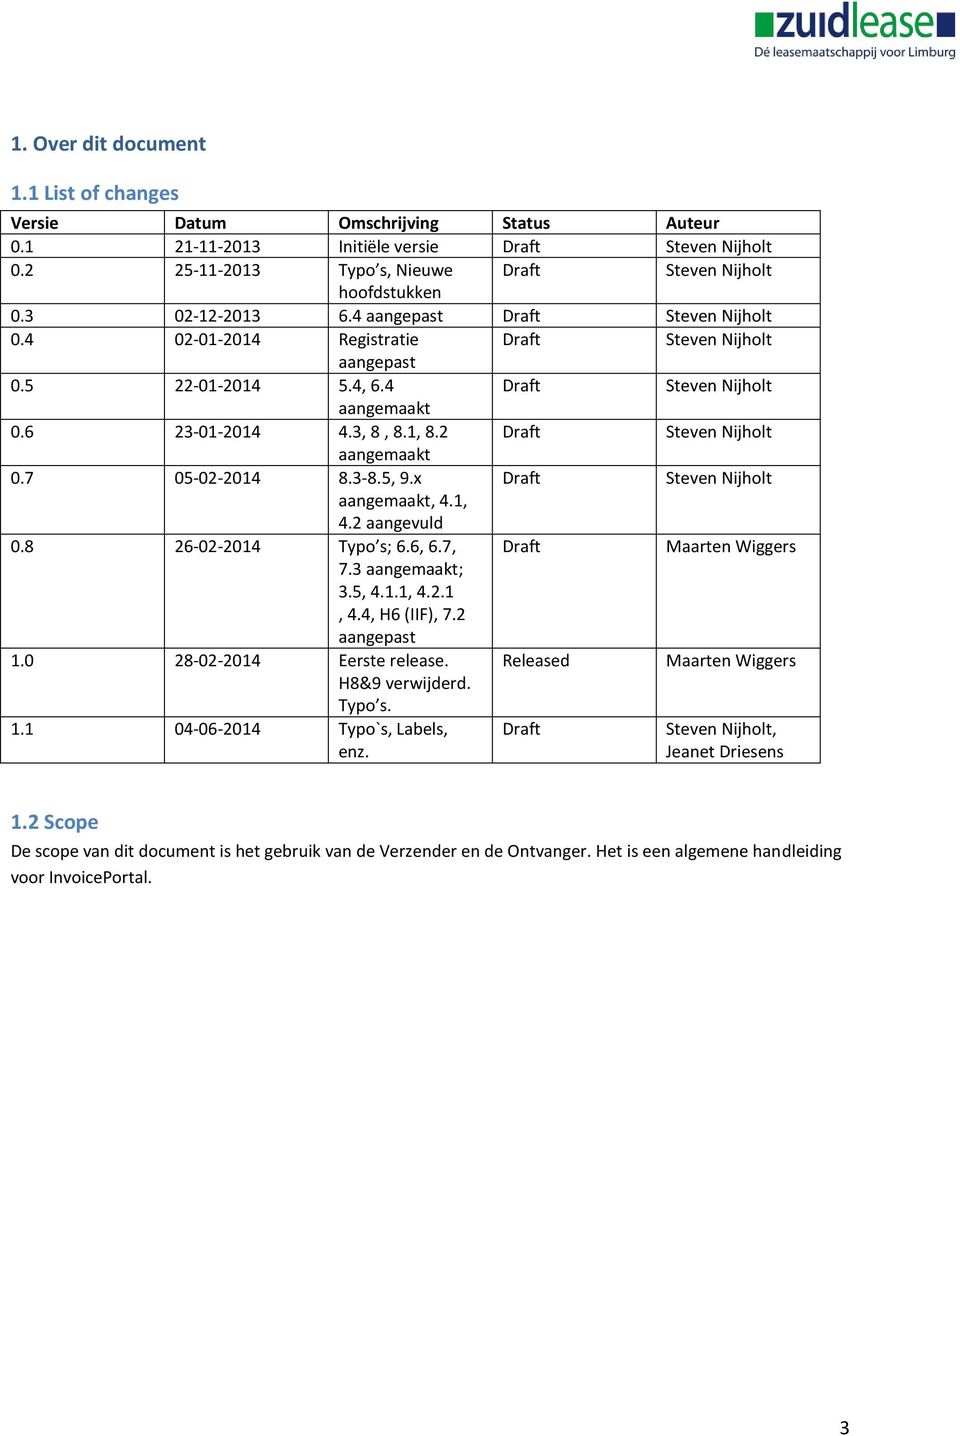 2 Draft Steven Nijholt aangemaakt 0.7 05-02-2014 8.3-8.5, 9.x Draft Steven Nijholt aangemaakt, 4.1, 4.2 aangevuld 0.8 26-02-2014 Typo s; 6.6, 6.7, Draft Maarten Wiggers 7.3 aangemaakt; 3.5, 4.1.1, 4.2.1, 4.4, H6 (IIF), 7.